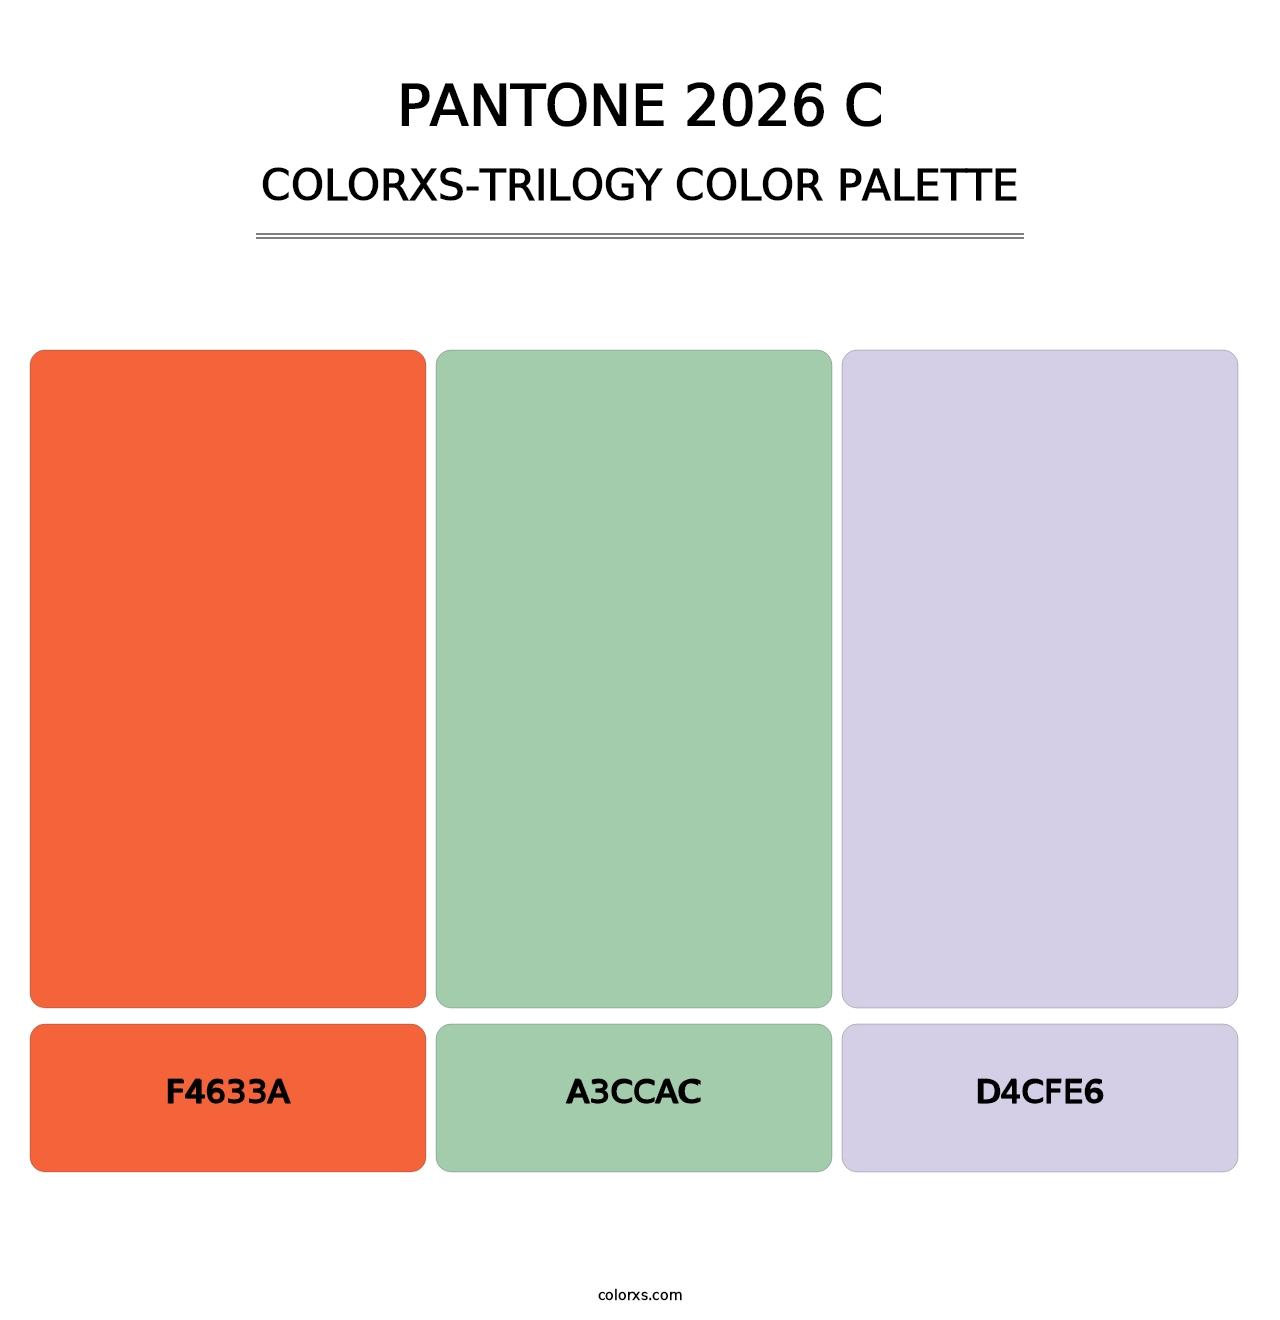 PANTONE 2026 C - Colorxs Trilogy Palette